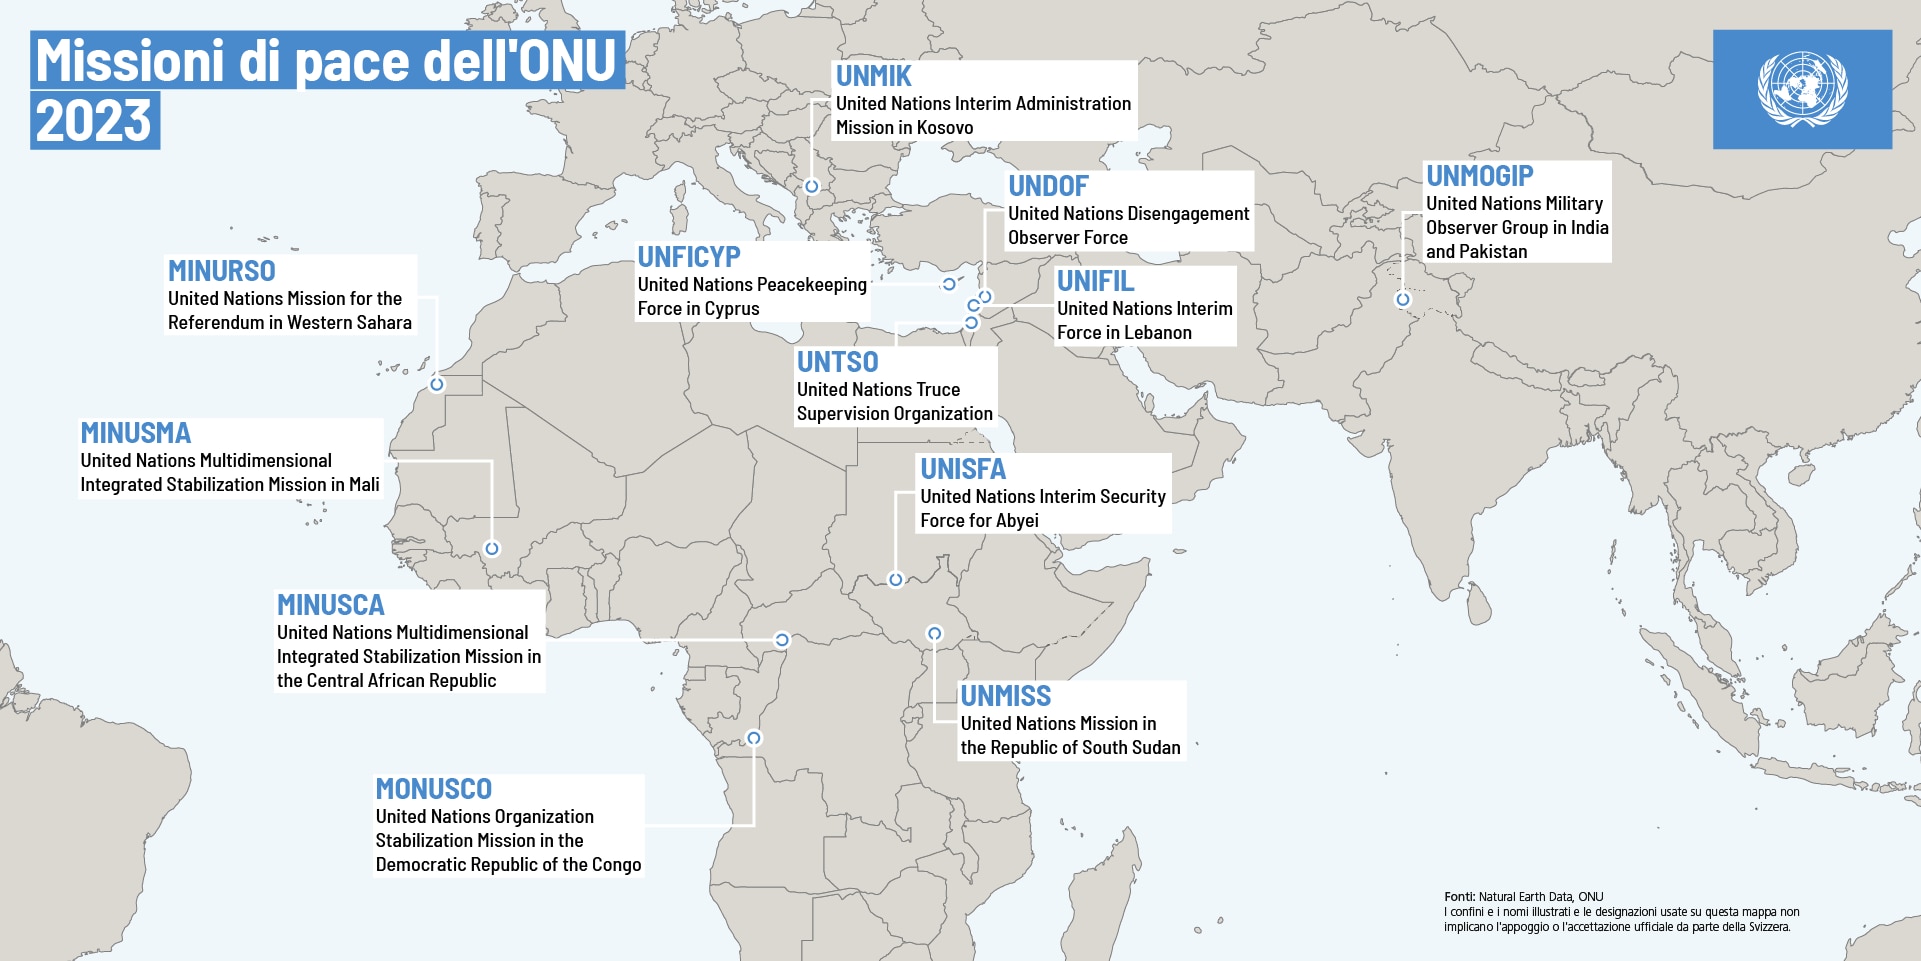 Mappa del mondo che mostra le dodici missioni di pace delle Nazioni Unite.